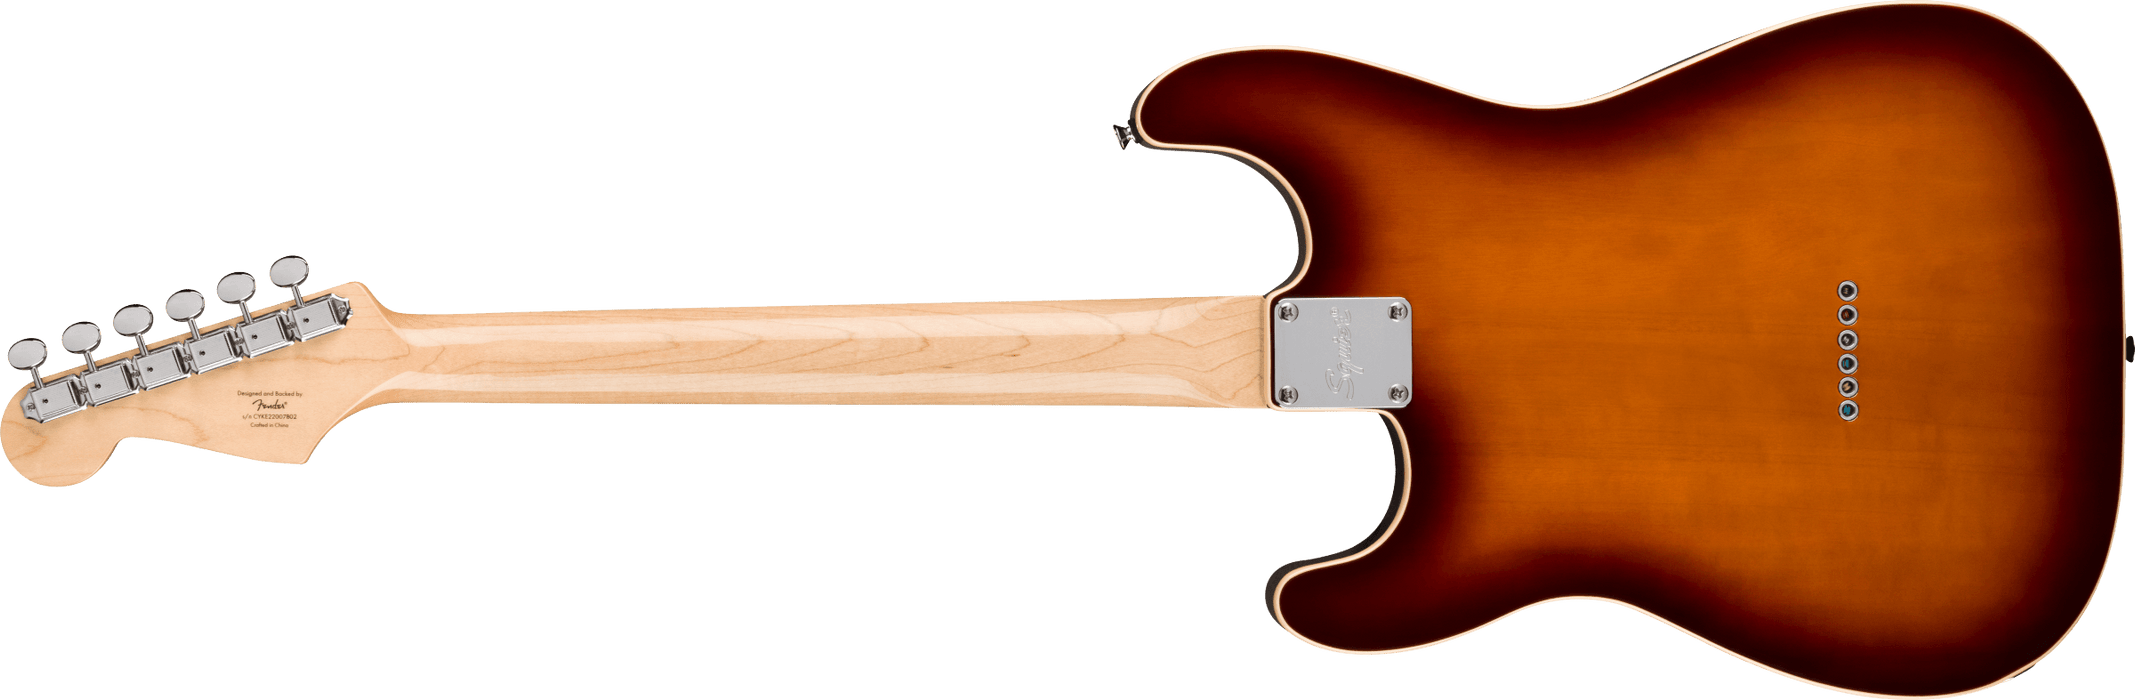 Fender Squier Paranormal Custom Nashville Stratocaster®, Laurel Fingerboard, Black Pickguard, Chocolate 2-Color Sunburst